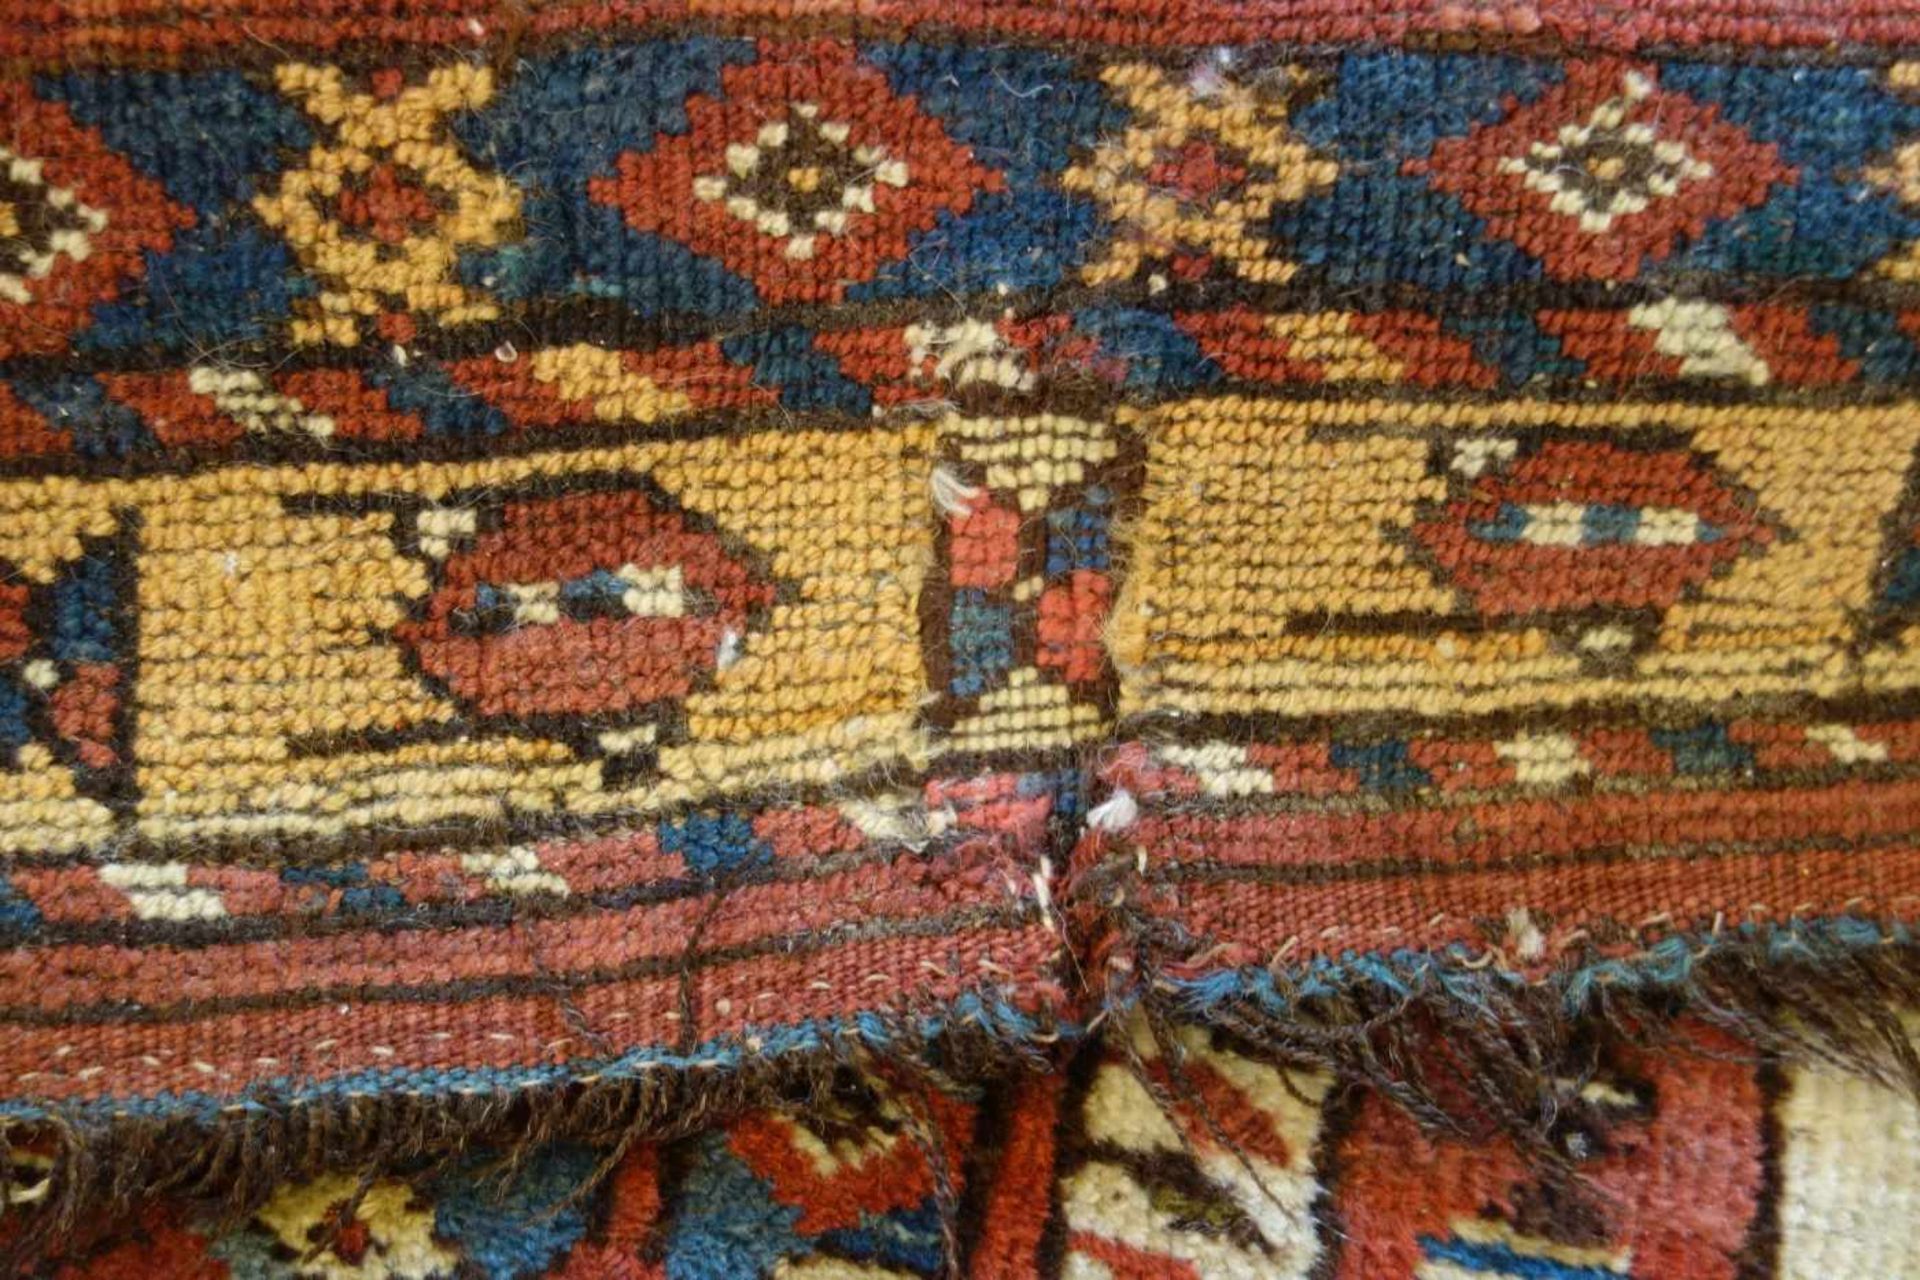 SCHMALER BESCHIR GEBETSTEPPICH / prayer rug, wohl 2. H. 19. Jh., Turkmenistan / Ersari-Beschir ( - Image 10 of 24